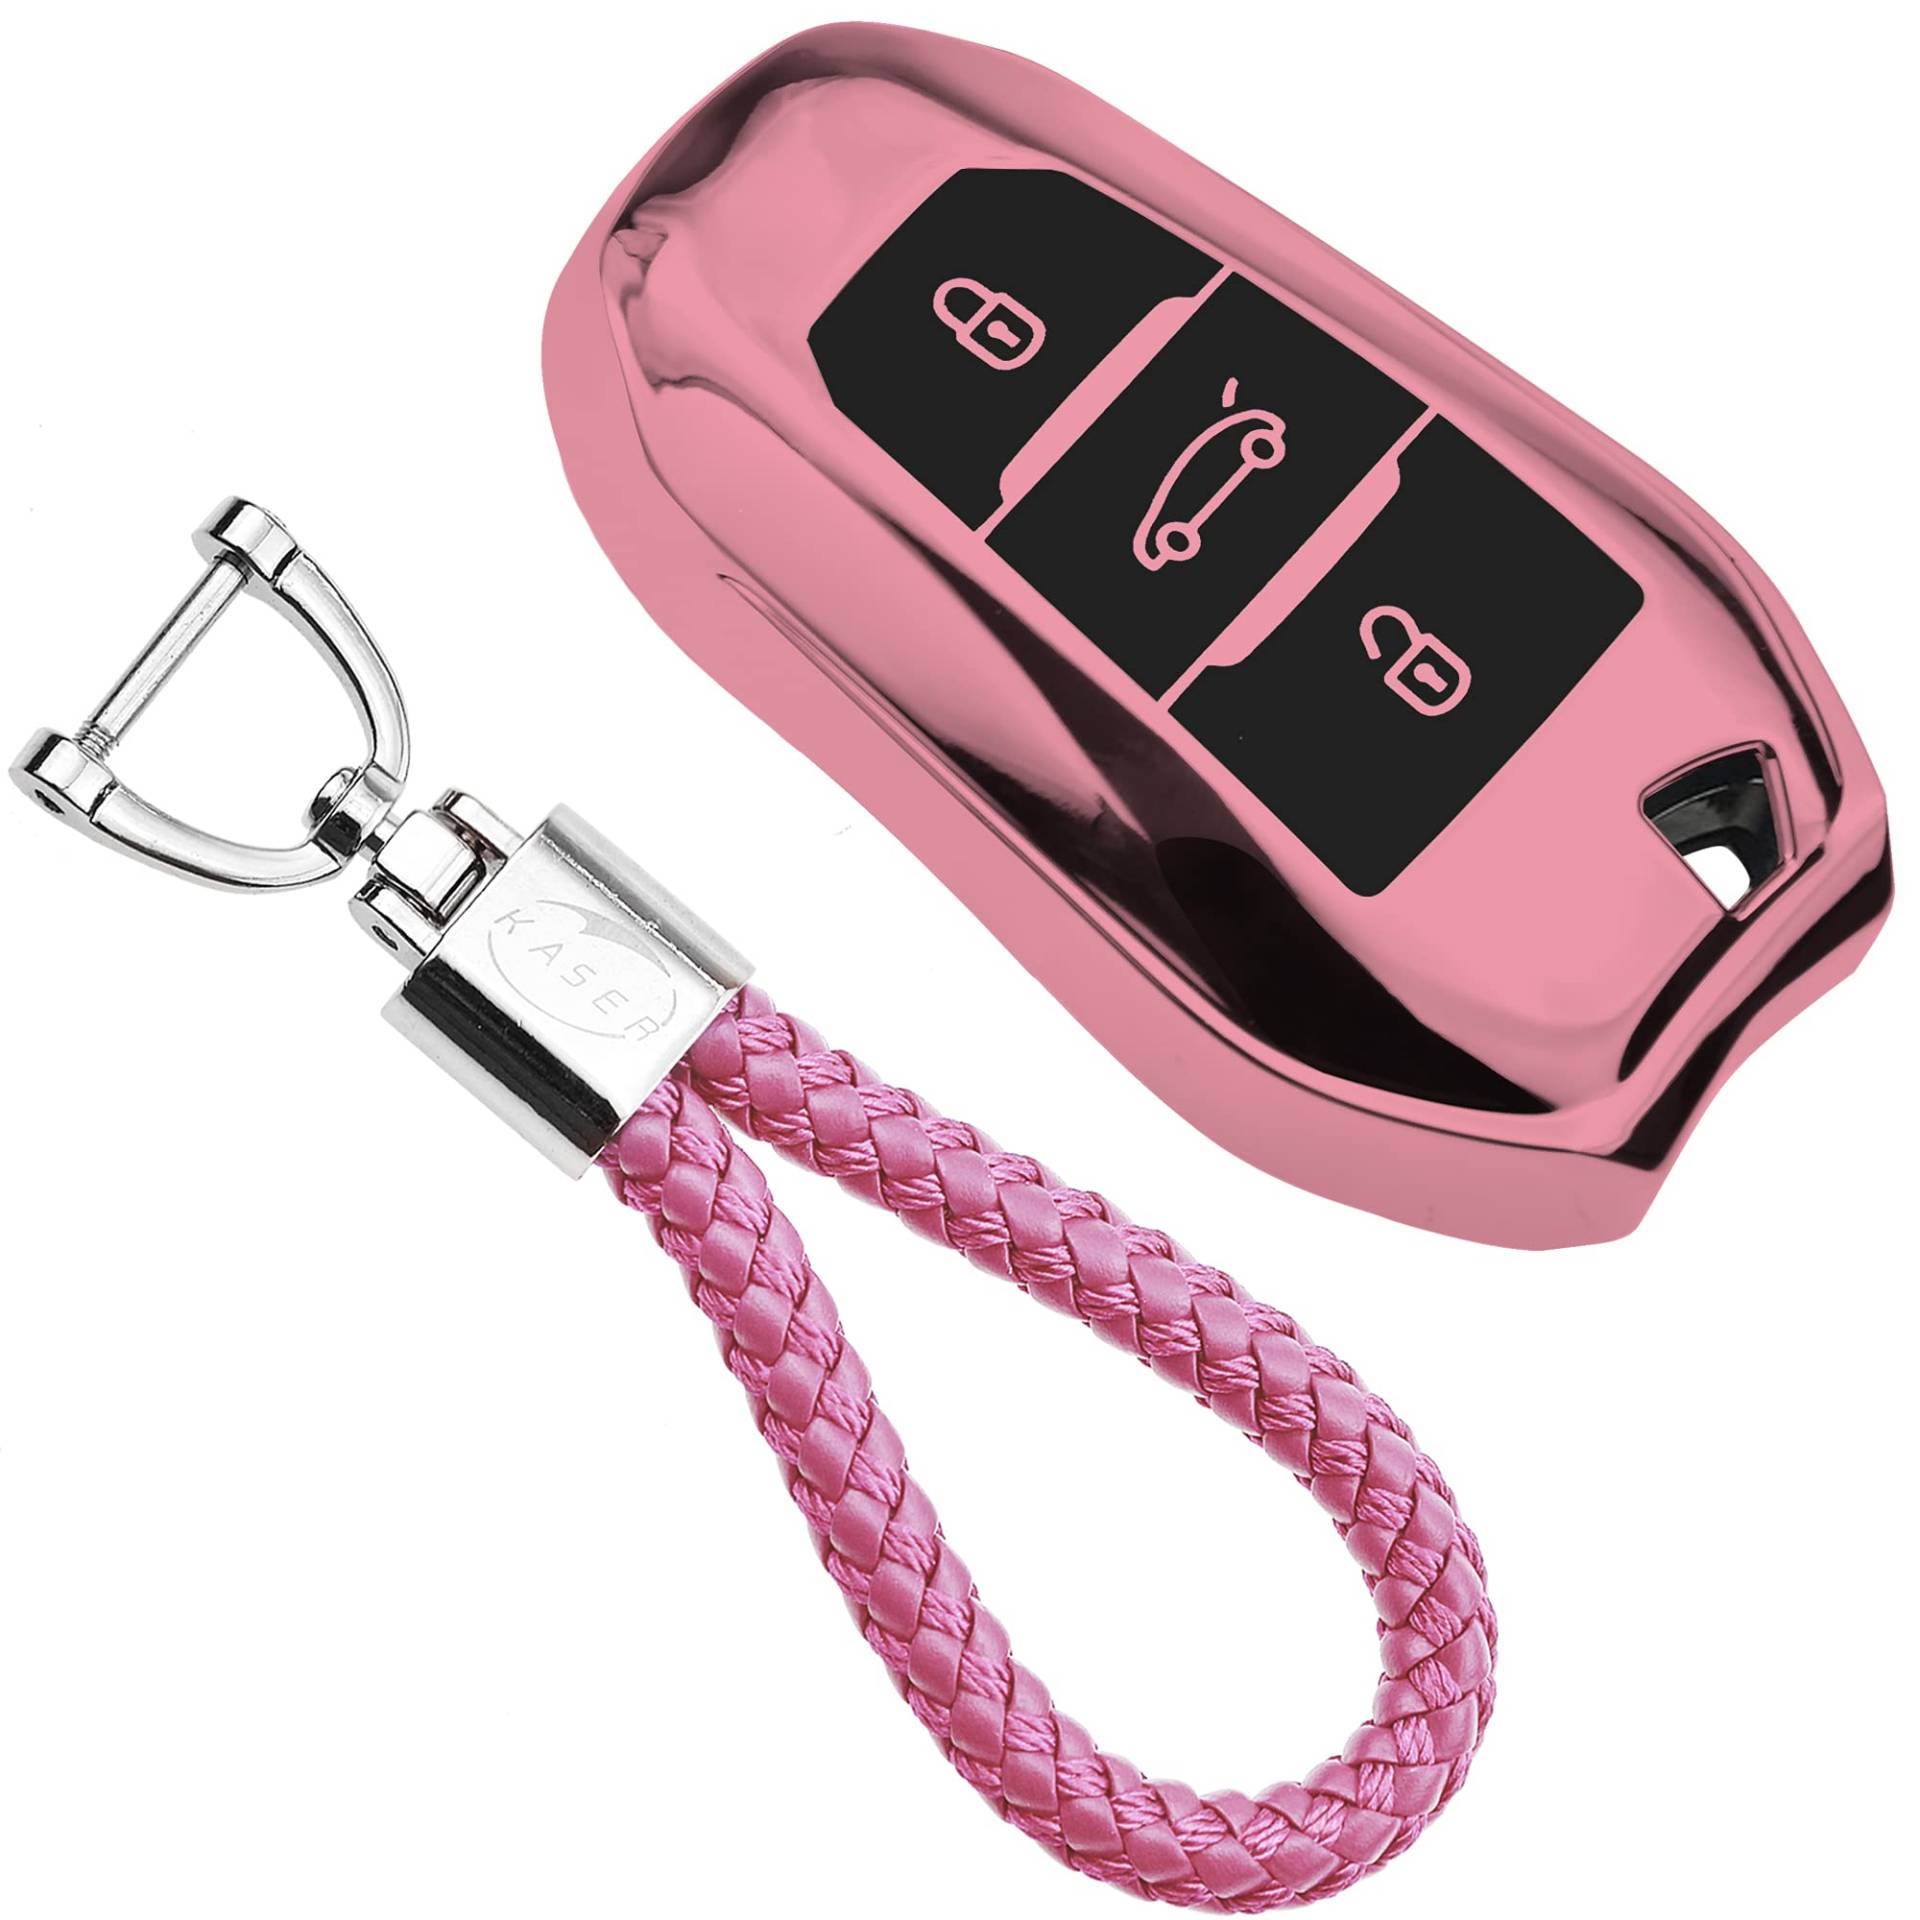 KASER Autoschlüssel Hülle kompatibel für Peugeot Citroen Cover TPU Silikon Hochglanz Schutzhülle Schlüsselhülle Fernbedienung Keyless 108 208 308 508 Citrone C1 C3 C5 Schlüsselbund (Pink) von Kaser